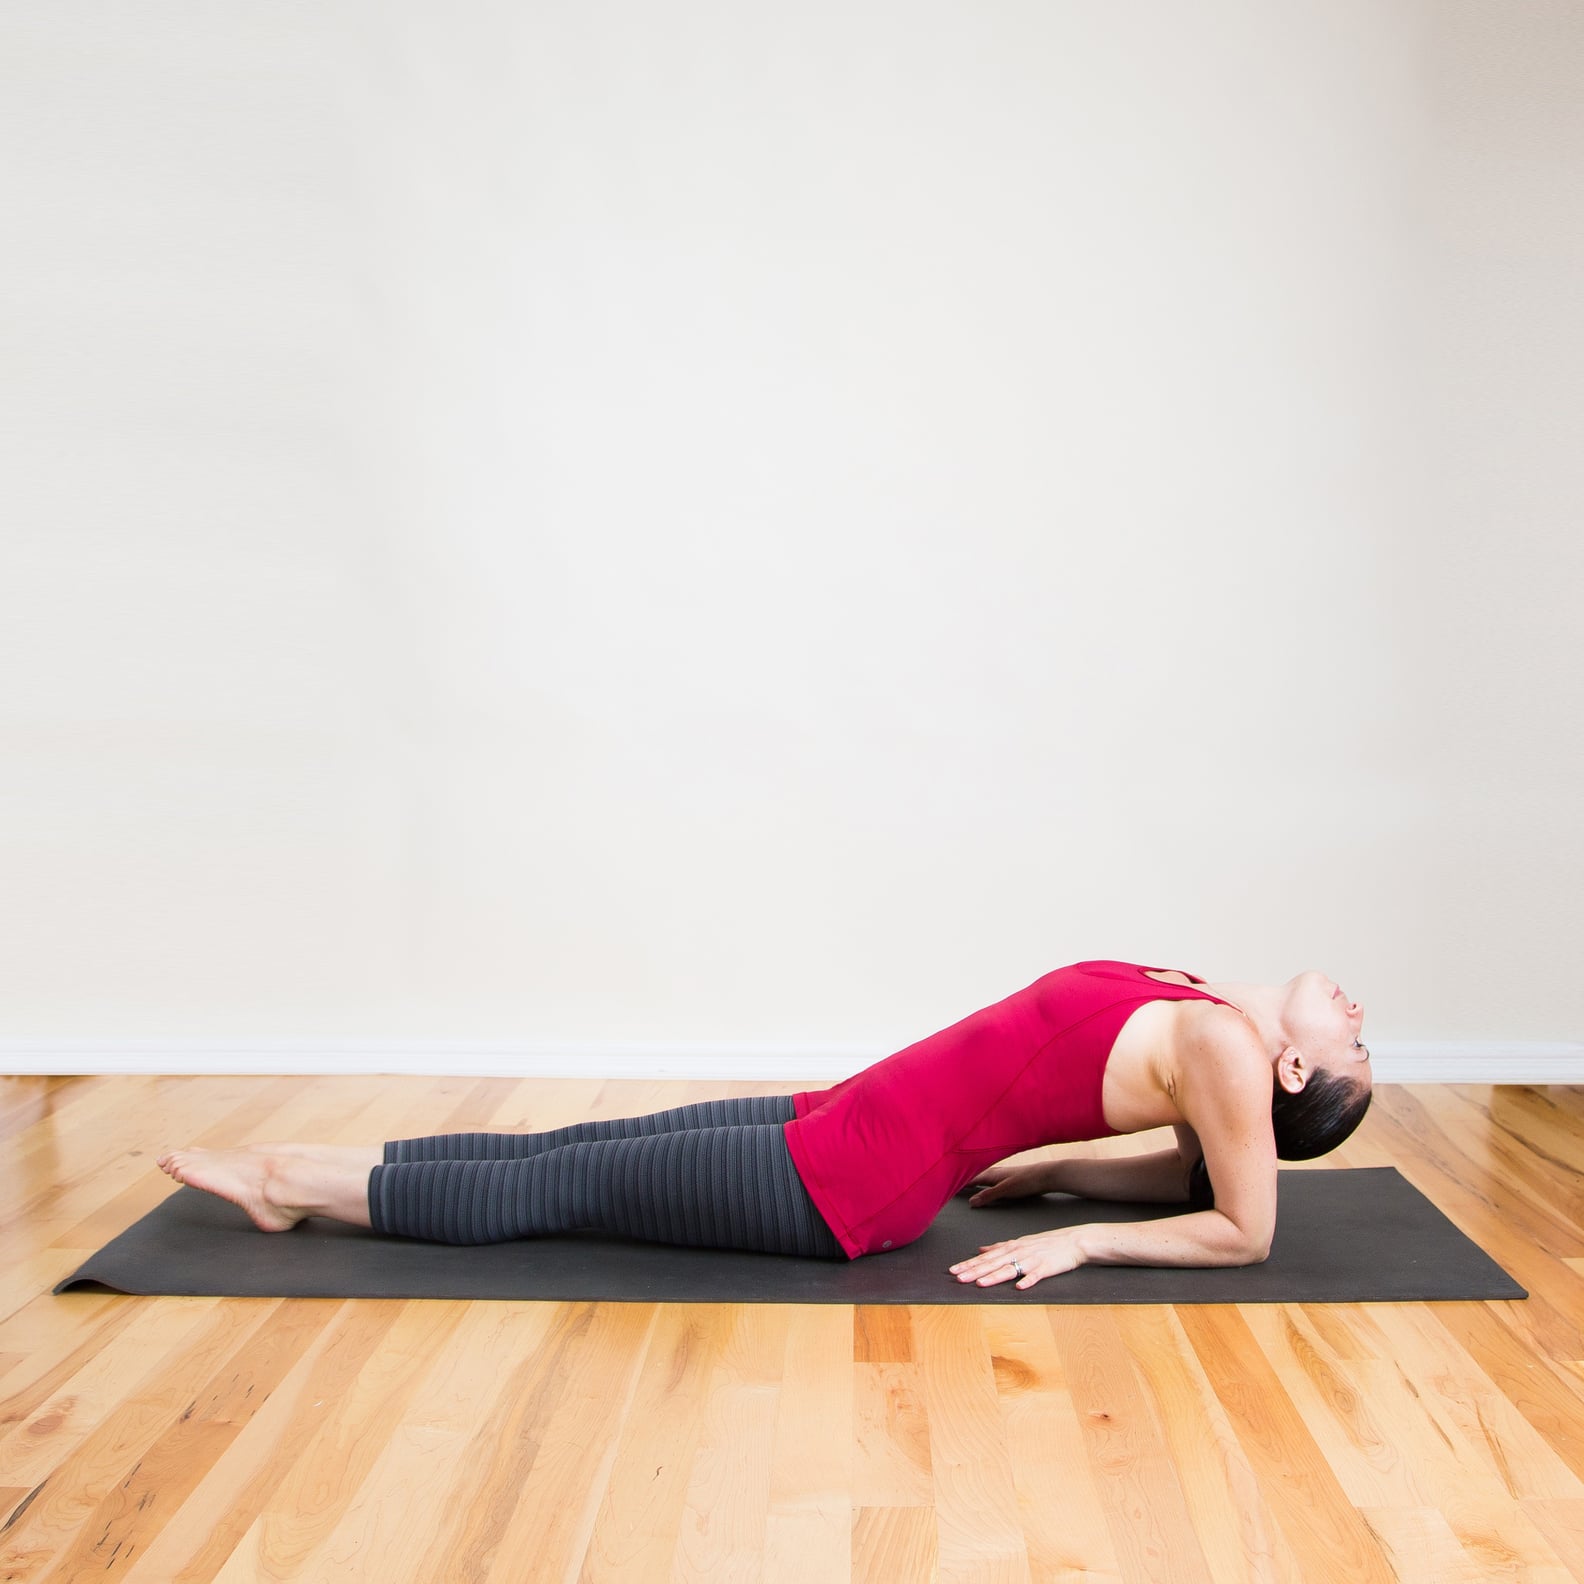 Best stretching. Растяжка спины на коврике. Стретчинг для спины. Скрутки в йоге.